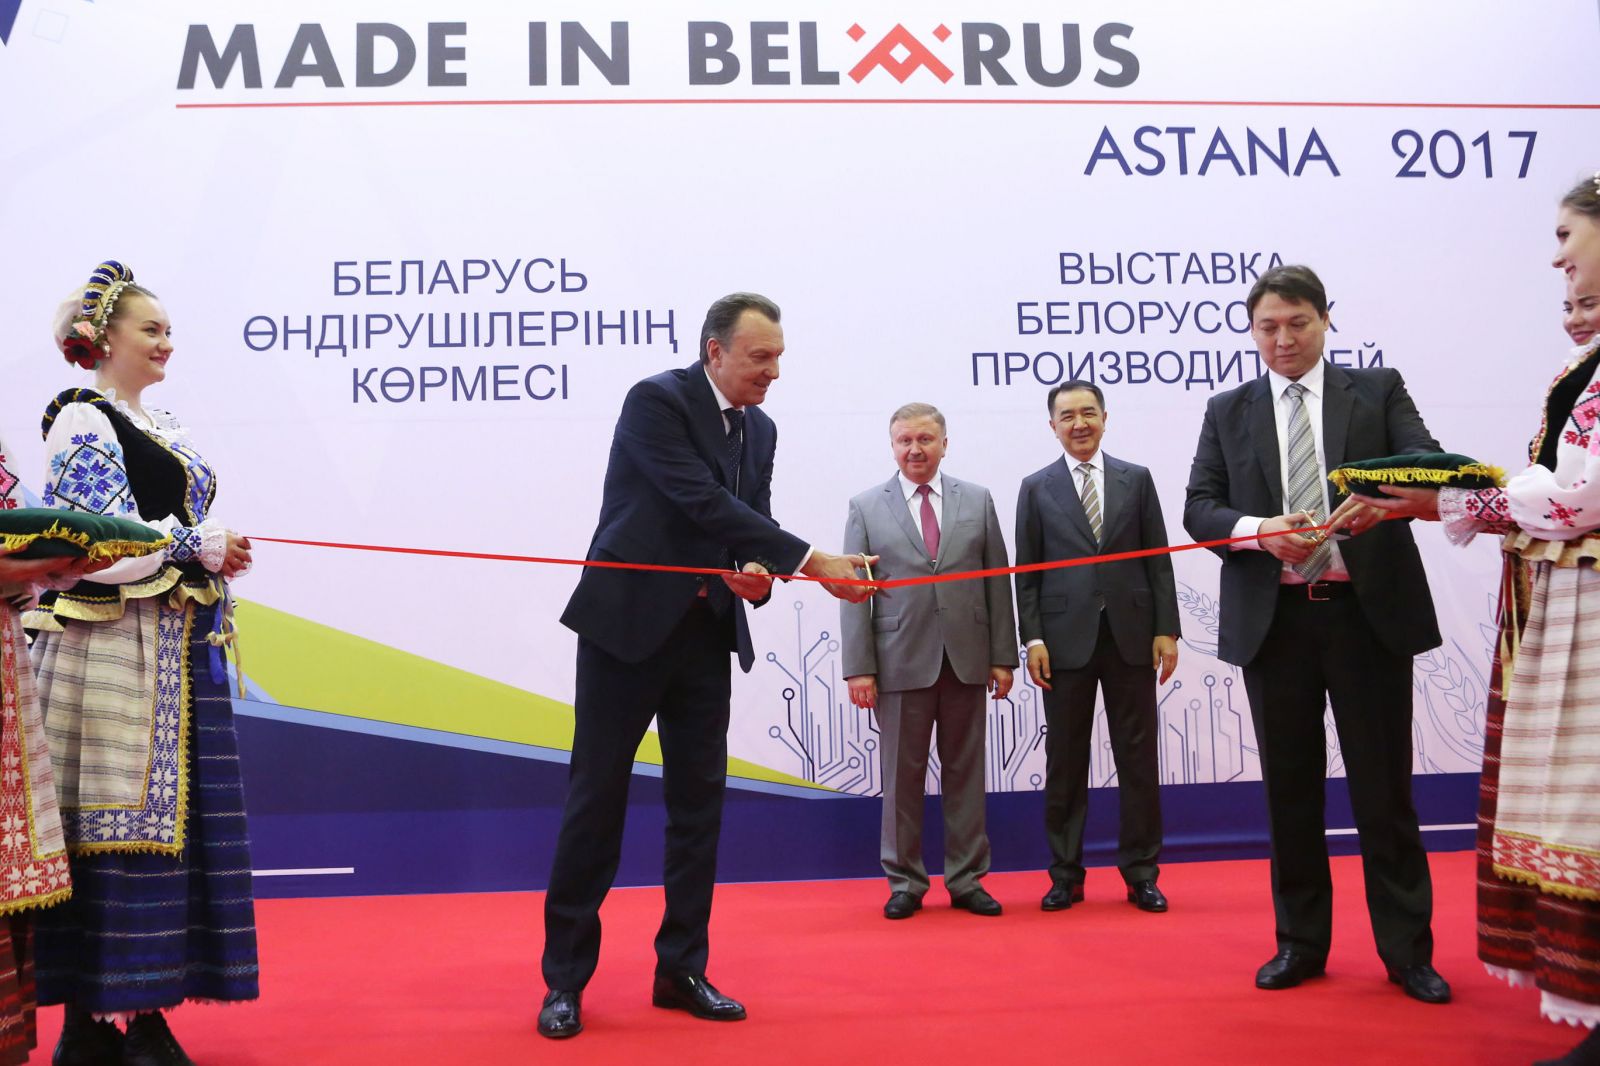 Выставка белорусских производителей Made in Belarus Astana